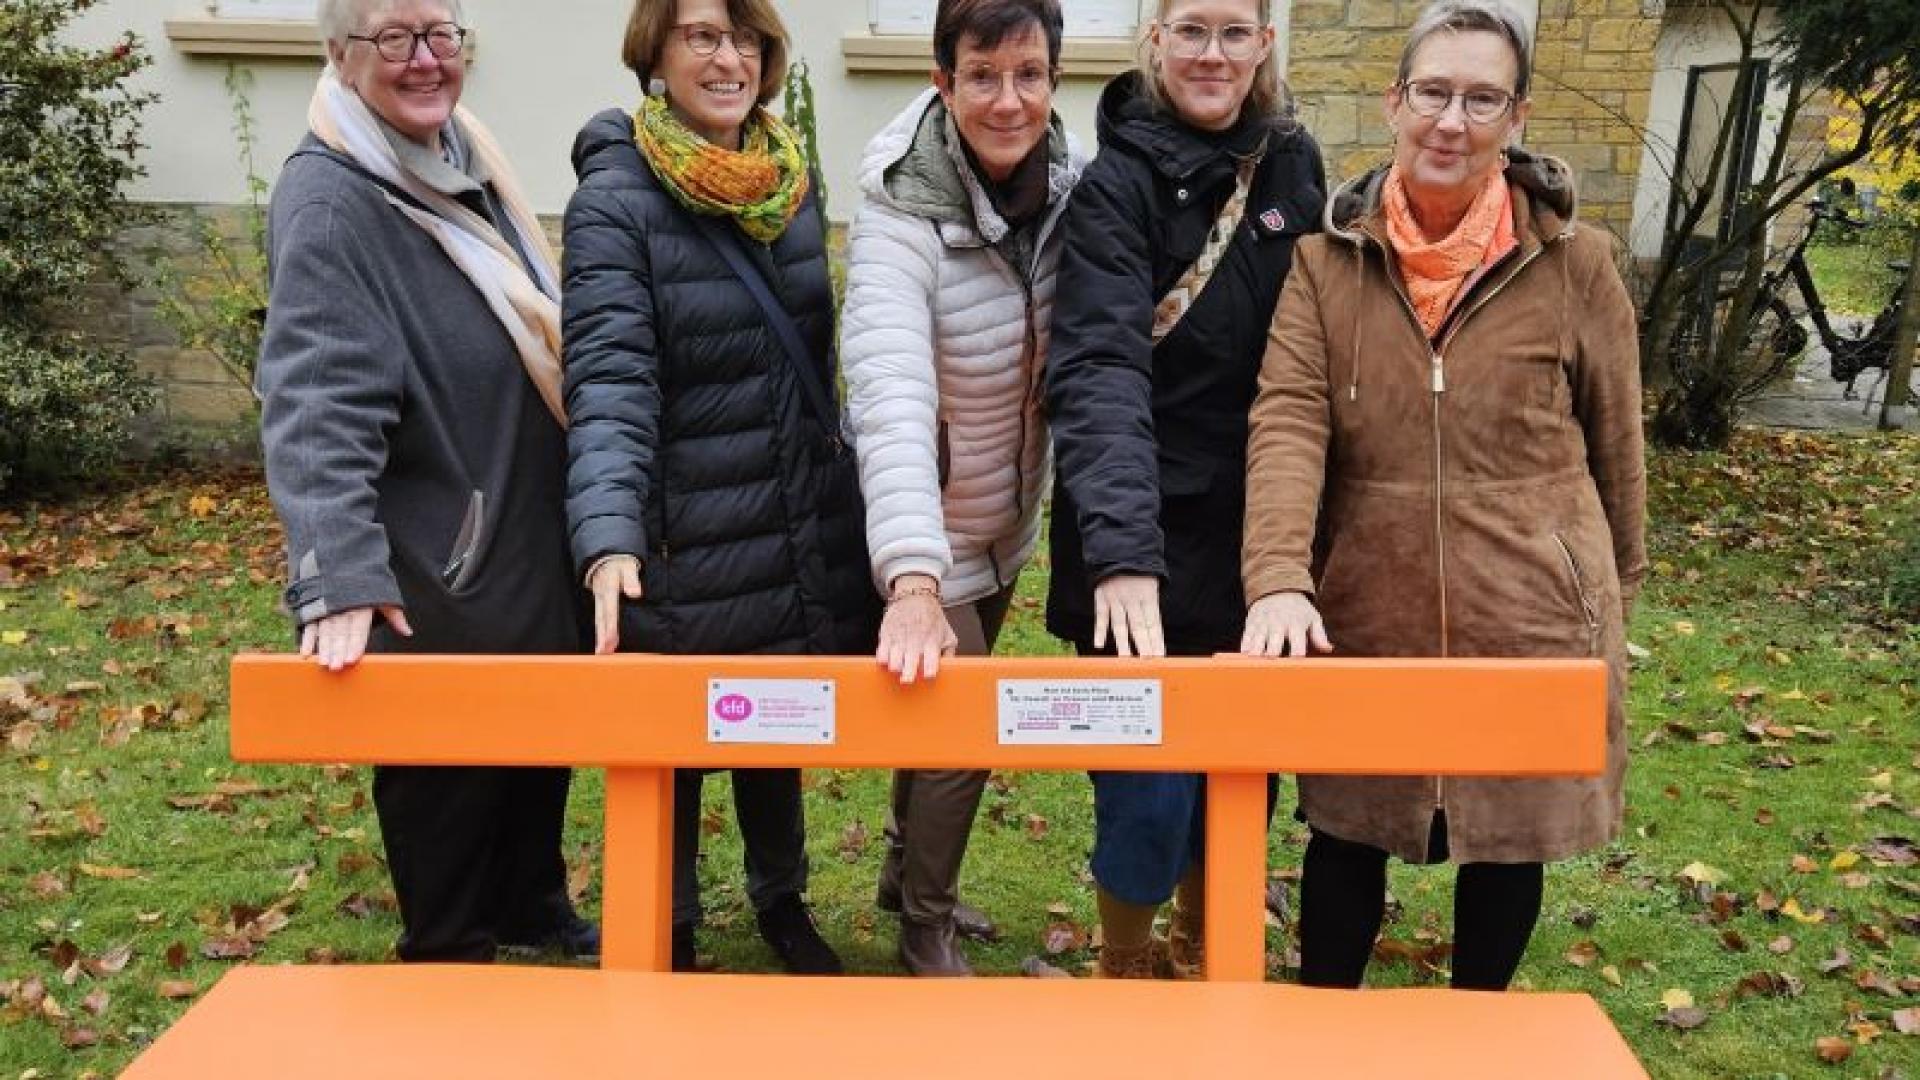 Fünf Frauen stehen hinter einer orangefarbenen Sitzbank